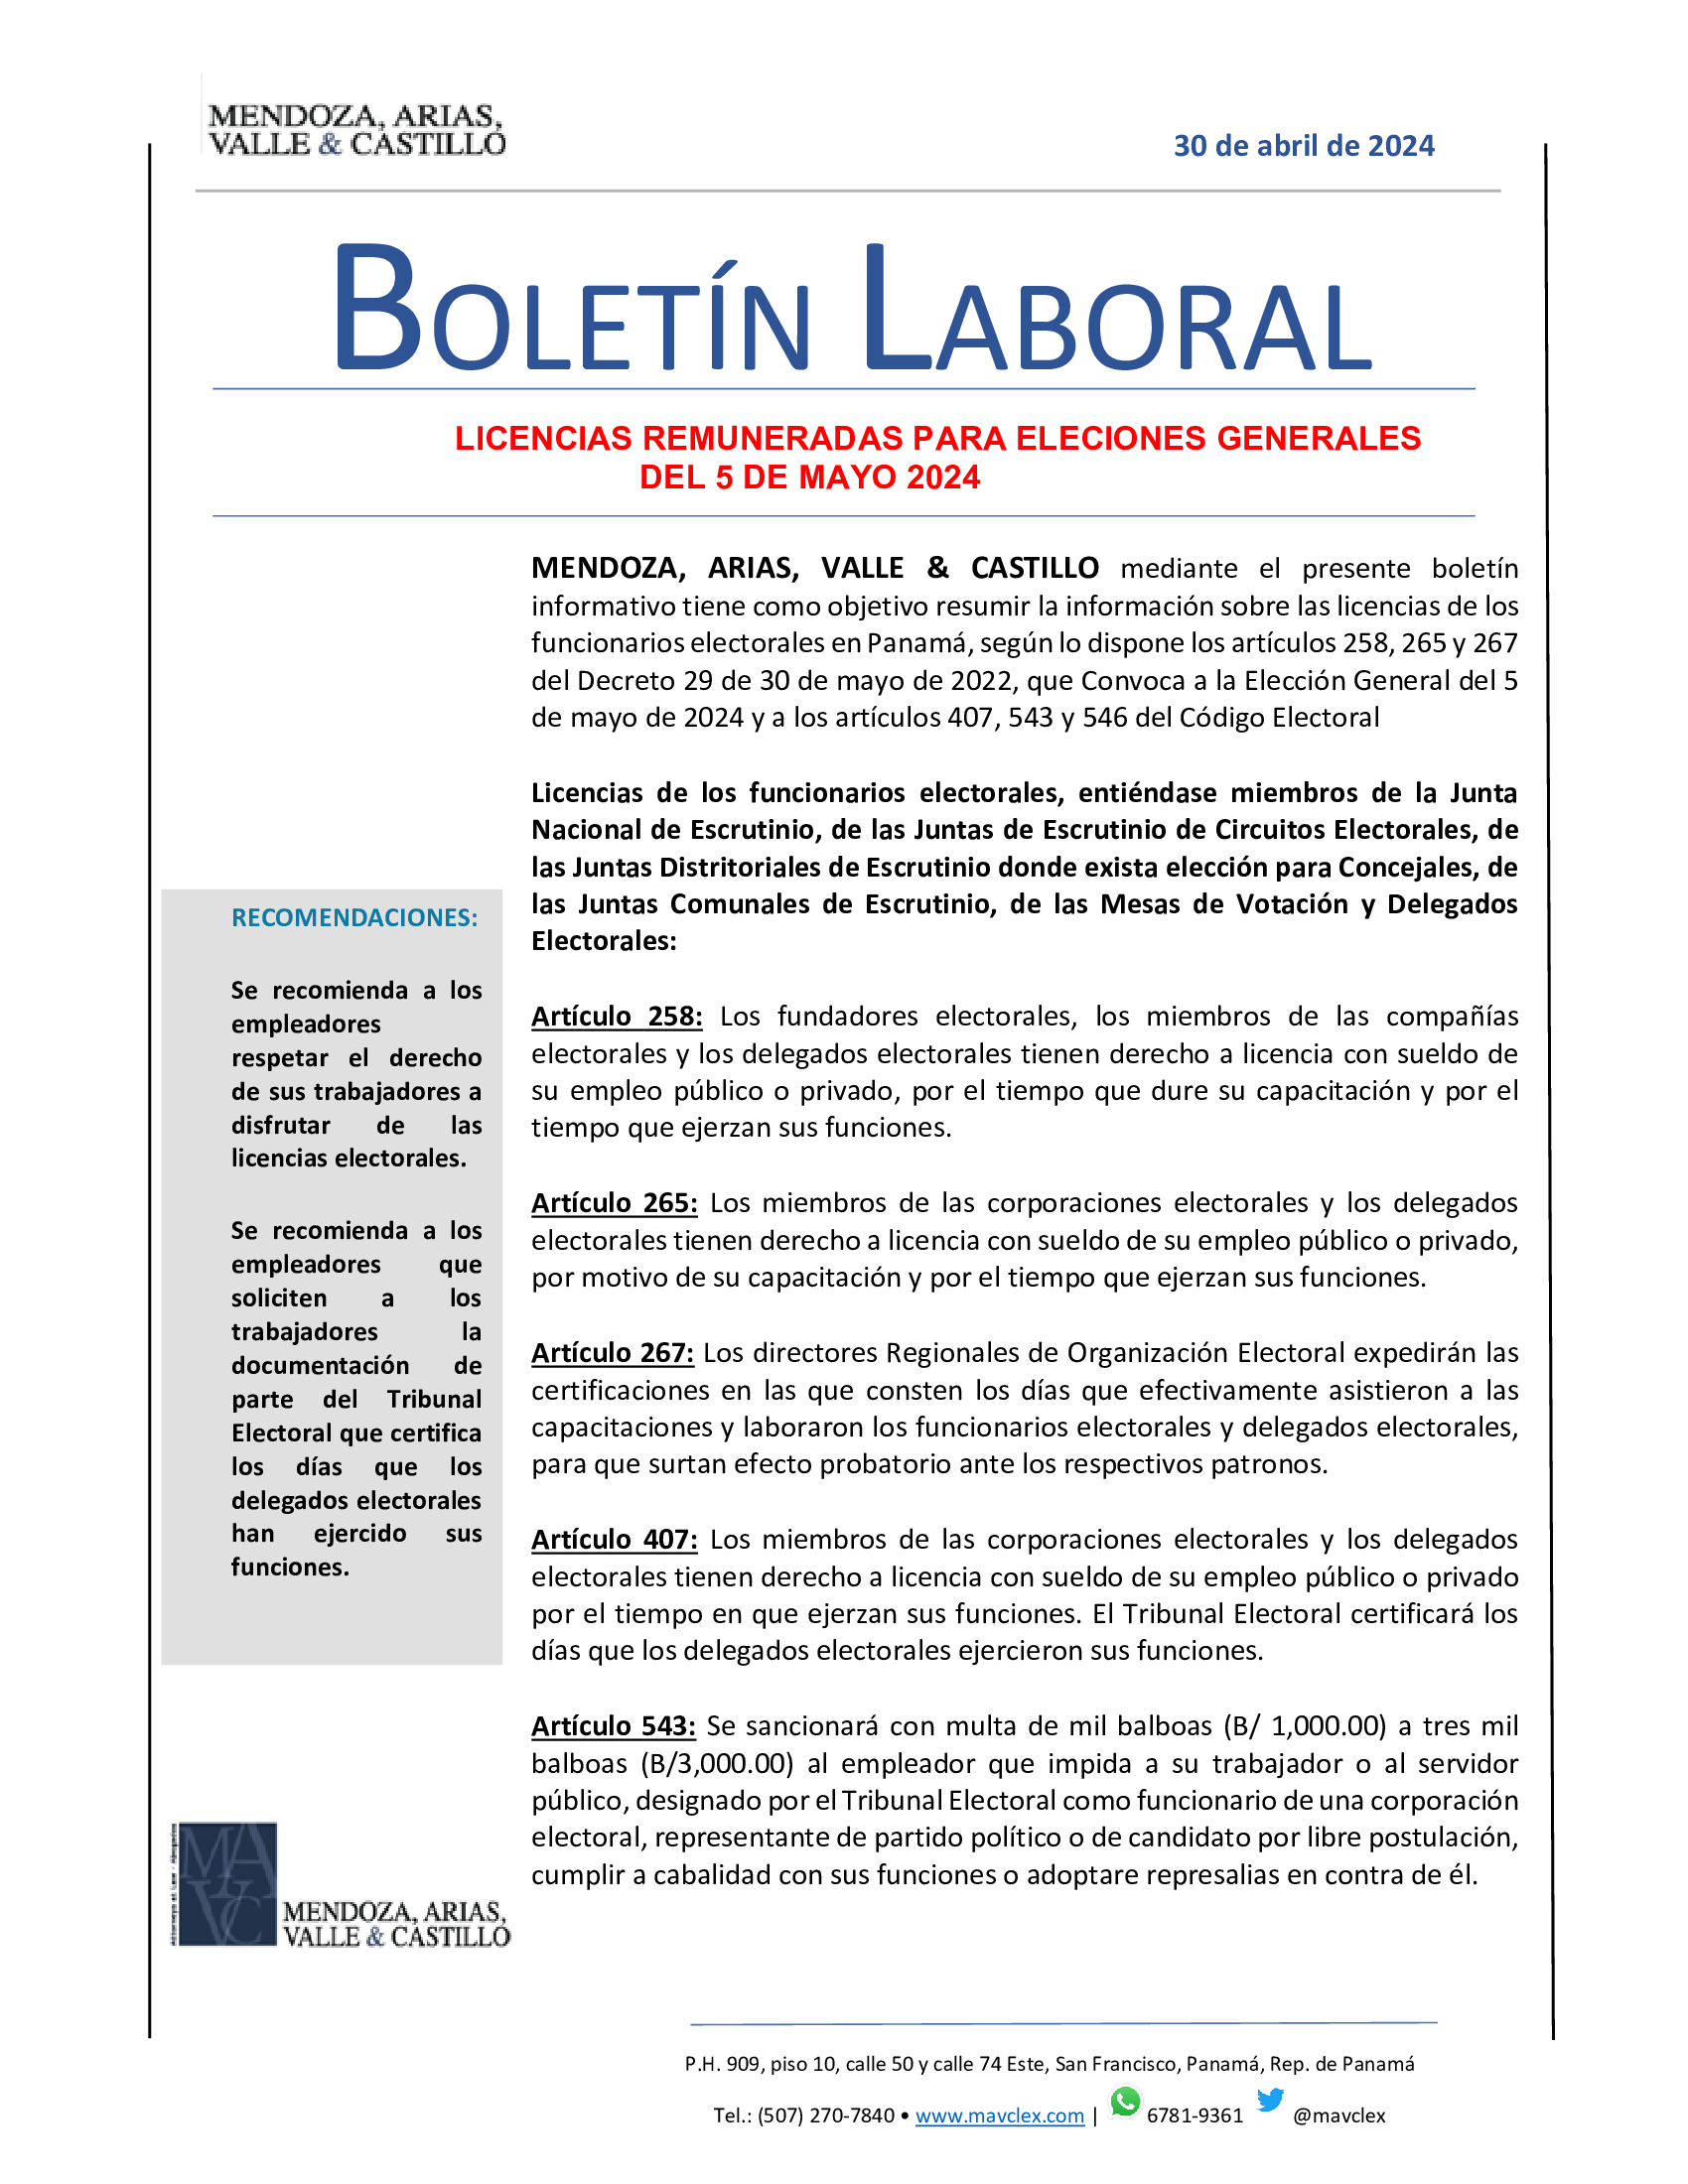 BOLETIN-LABORAL-30-de-abril-de-2024-LICENCIAS-REMUNERADAS-PARA-ELECCIONES-GENERALES (2)